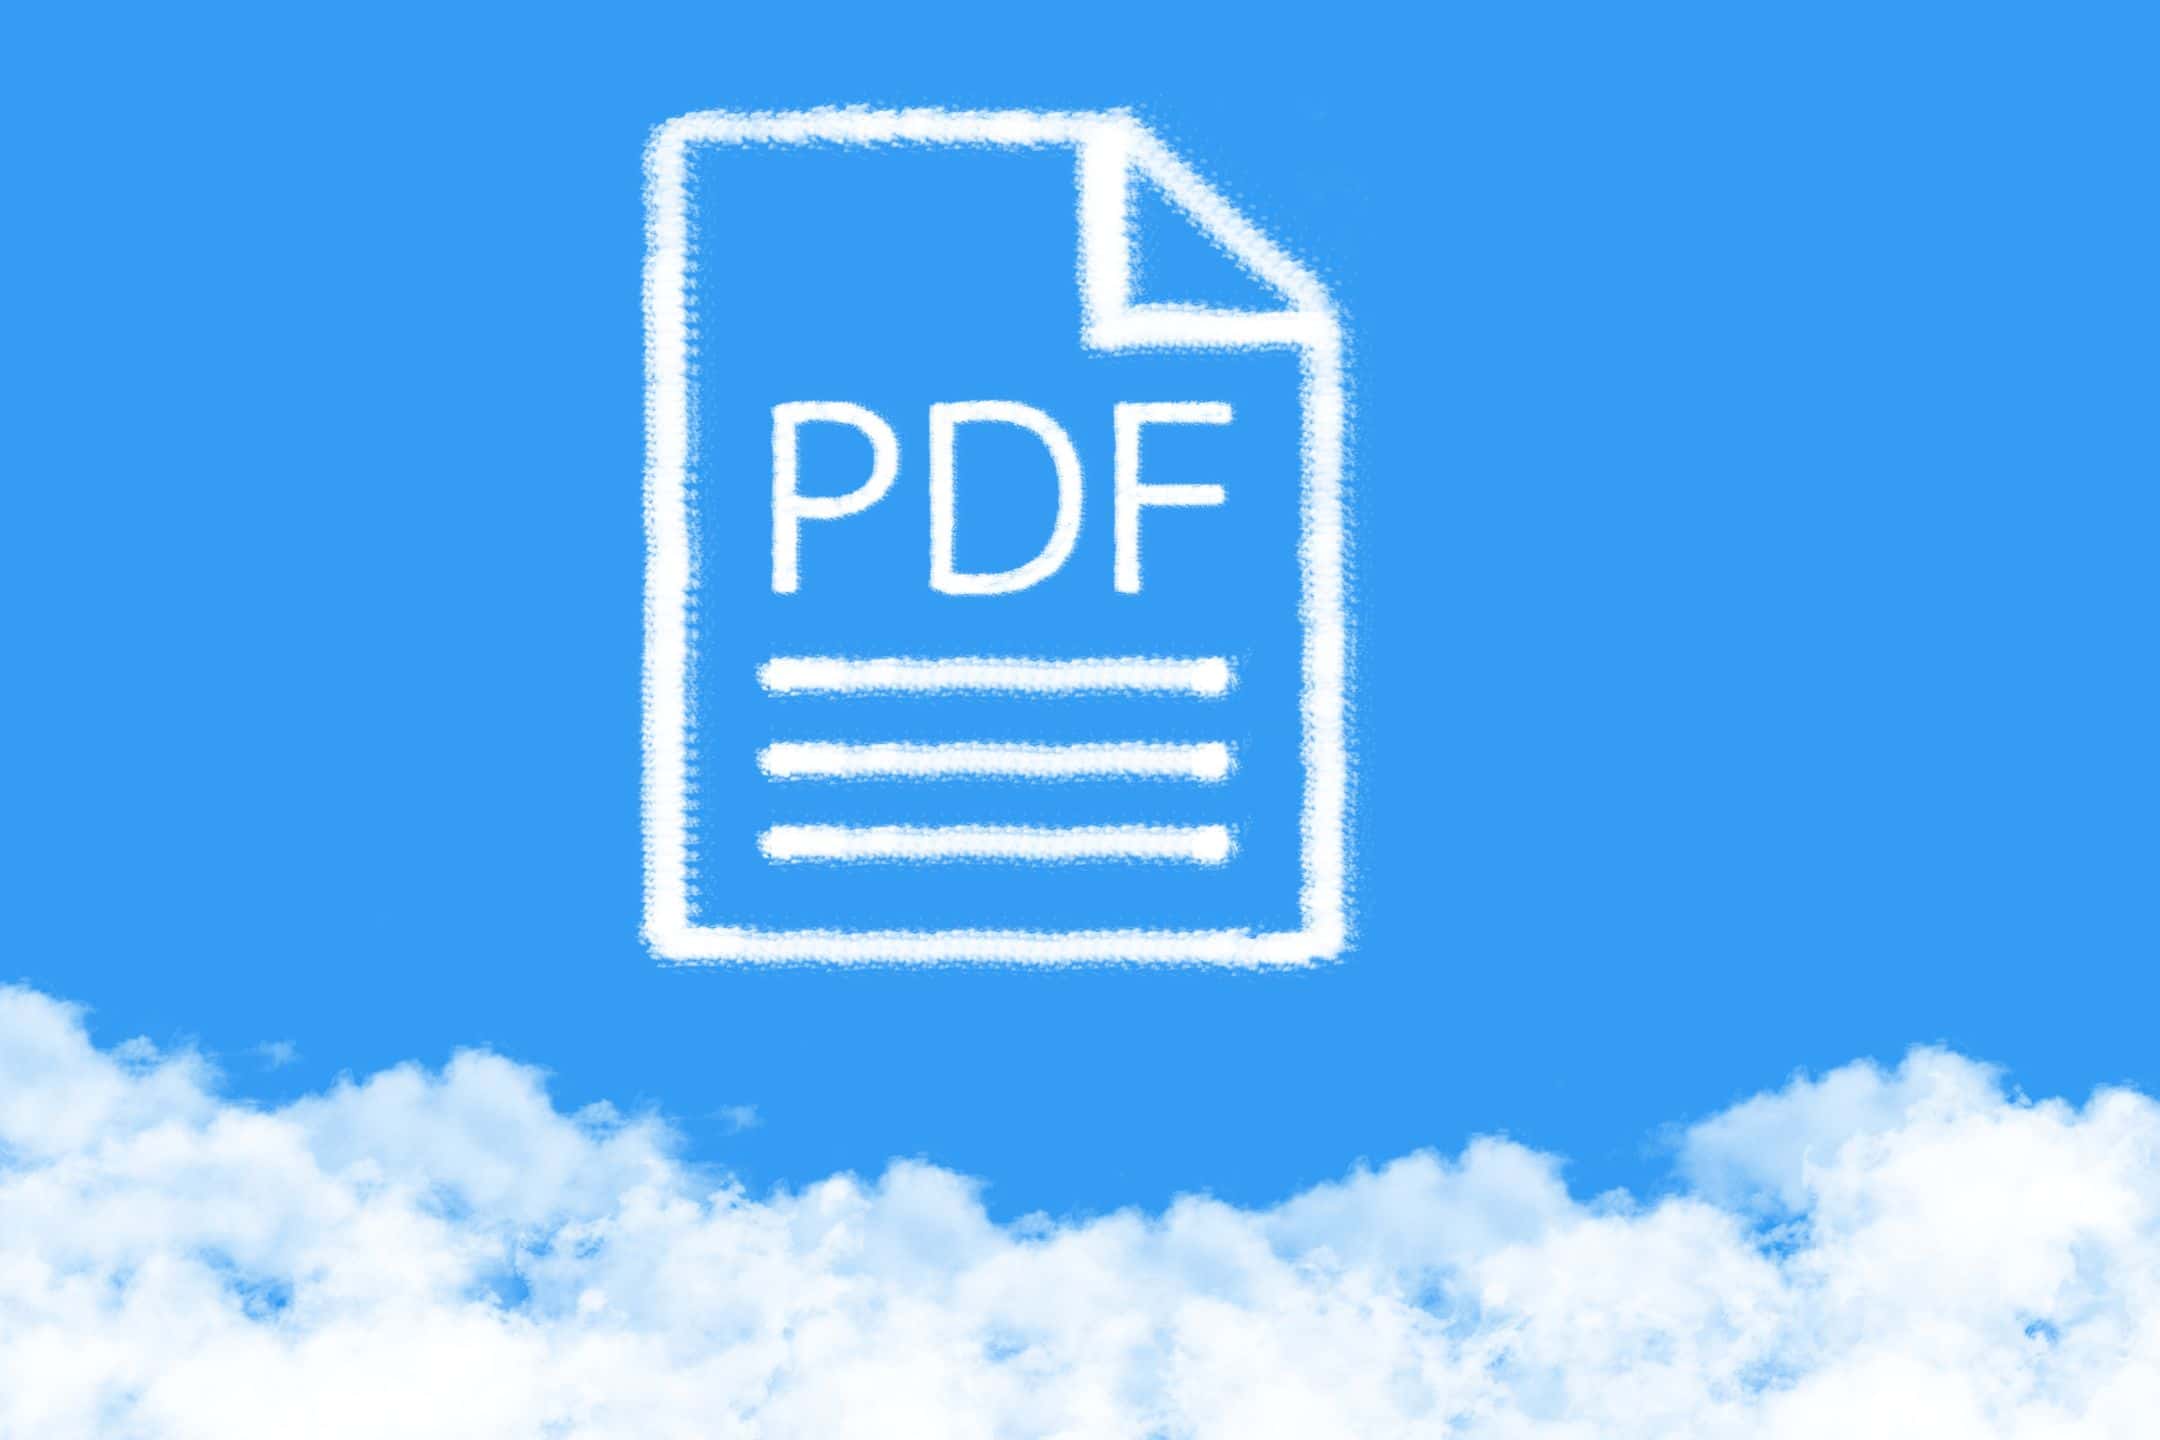 fichier pdf illustration sur des nuages dans un ciel bleu